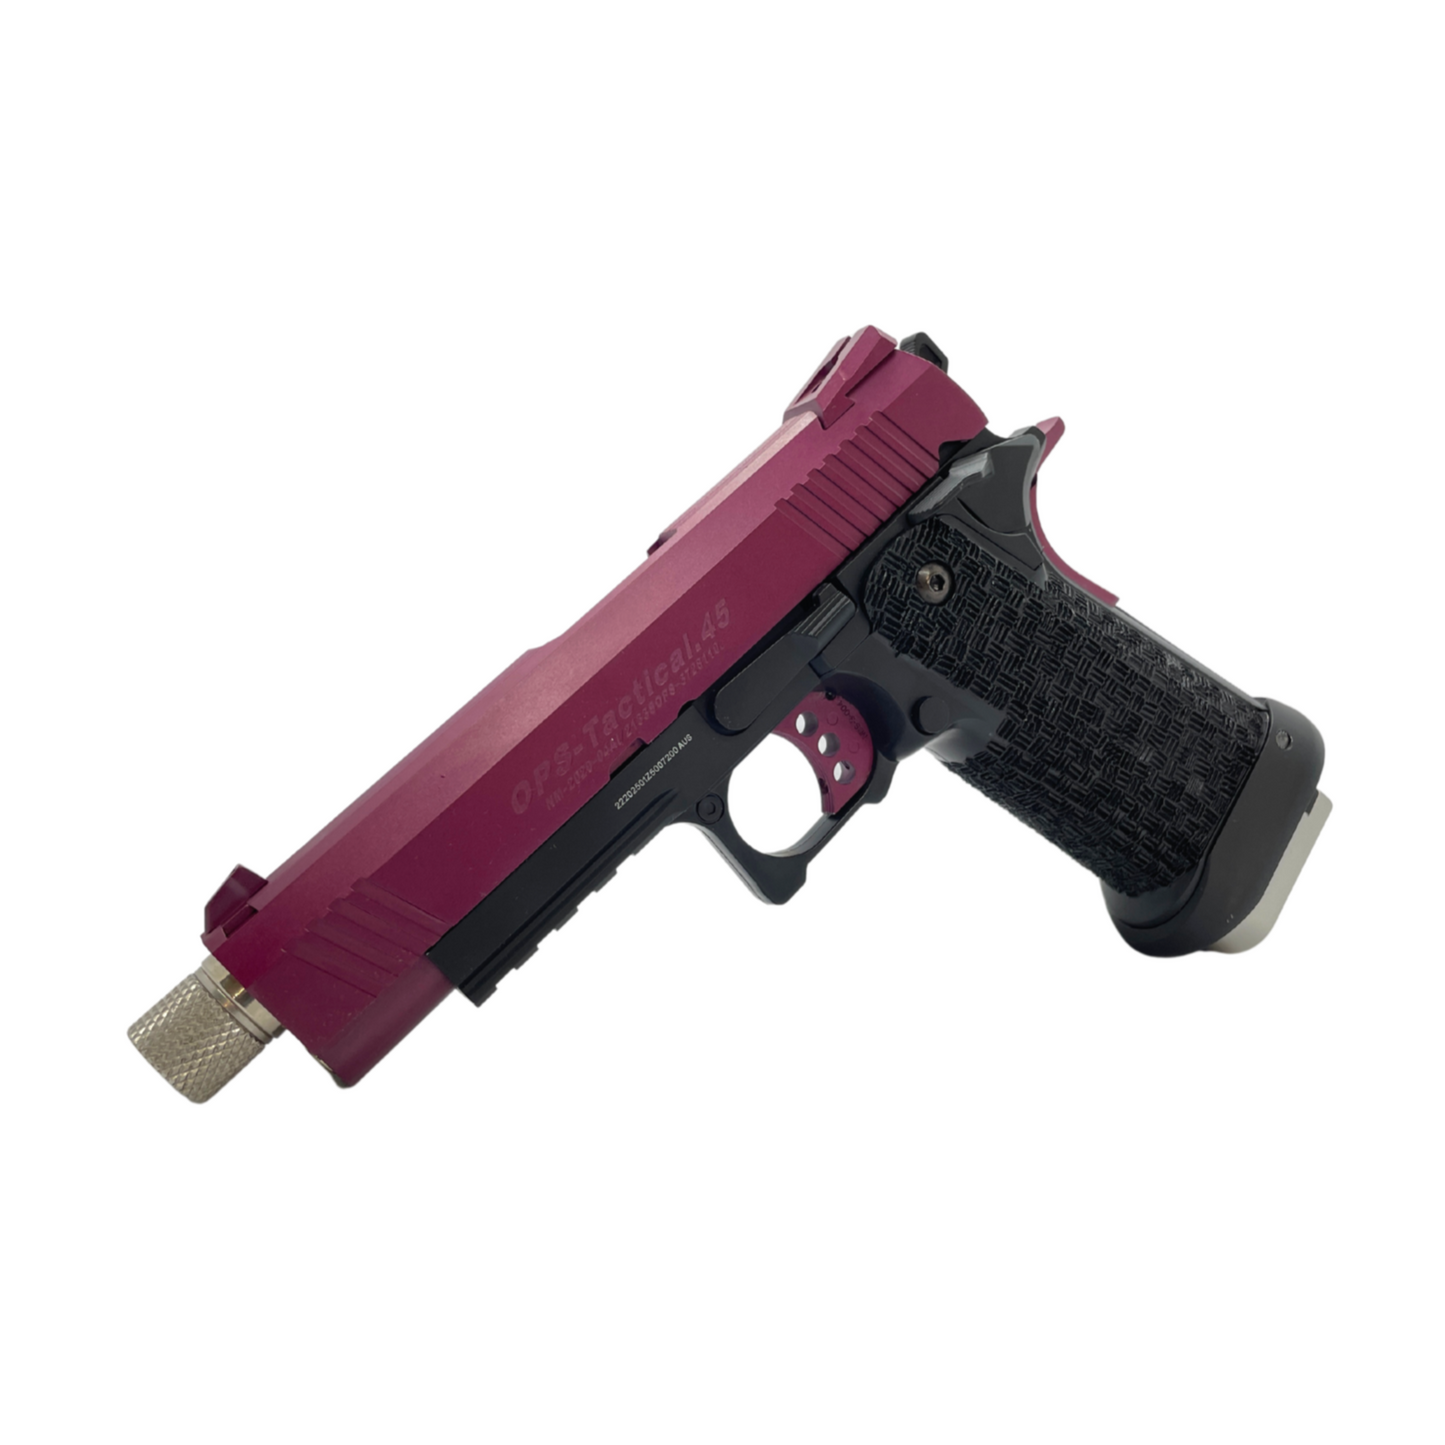 Custom "Thornberry" G/E Hi-Capa 4.3 OPS Tactical Gas Pistol - Gel Blaster